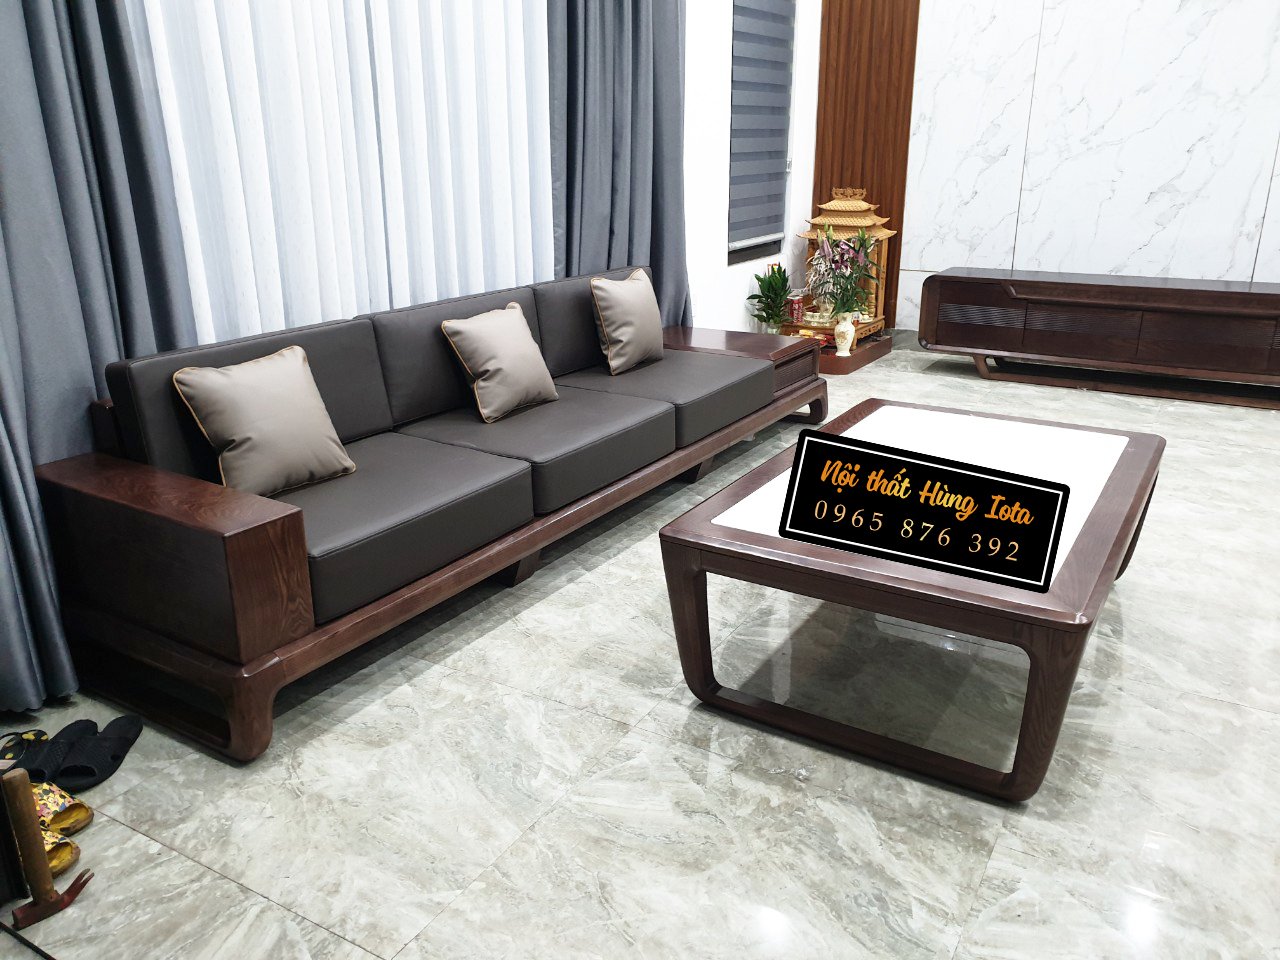 Bộ sofa gỗ đơn giản 2024: Bộ sofa gỗ đơn giản 2024 là sự lựa chọn hoàn hảo cho những ai yêu thích vẻ đẹp giản dị nhưng không kém phần sang trọng trong không gian nội thất. Với kết cấu chắc chắn và chất liệu đẹp, sản phẩm này sẽ đem tới sự thoải mái và thư giãn tuyệt vời.